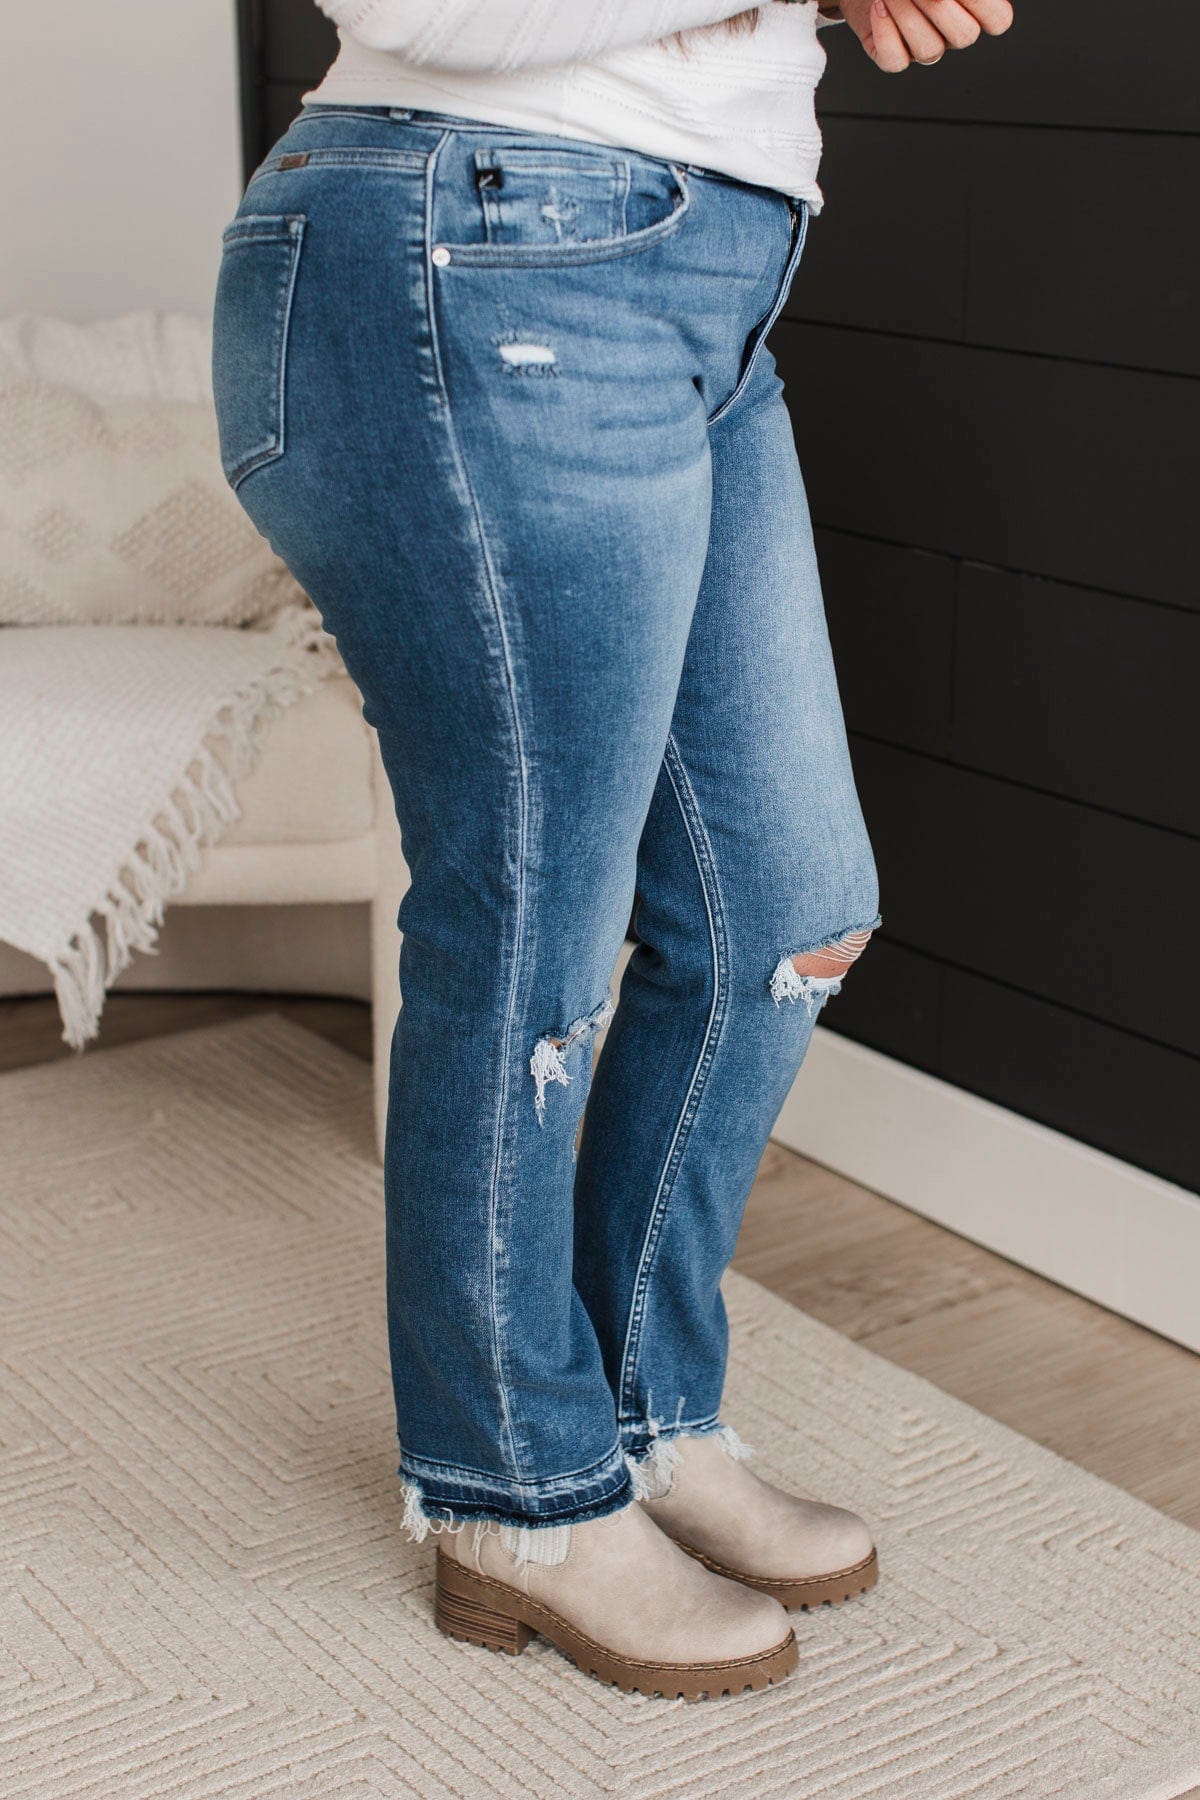 KanCan Slim Straight Jeans- Maya Wash